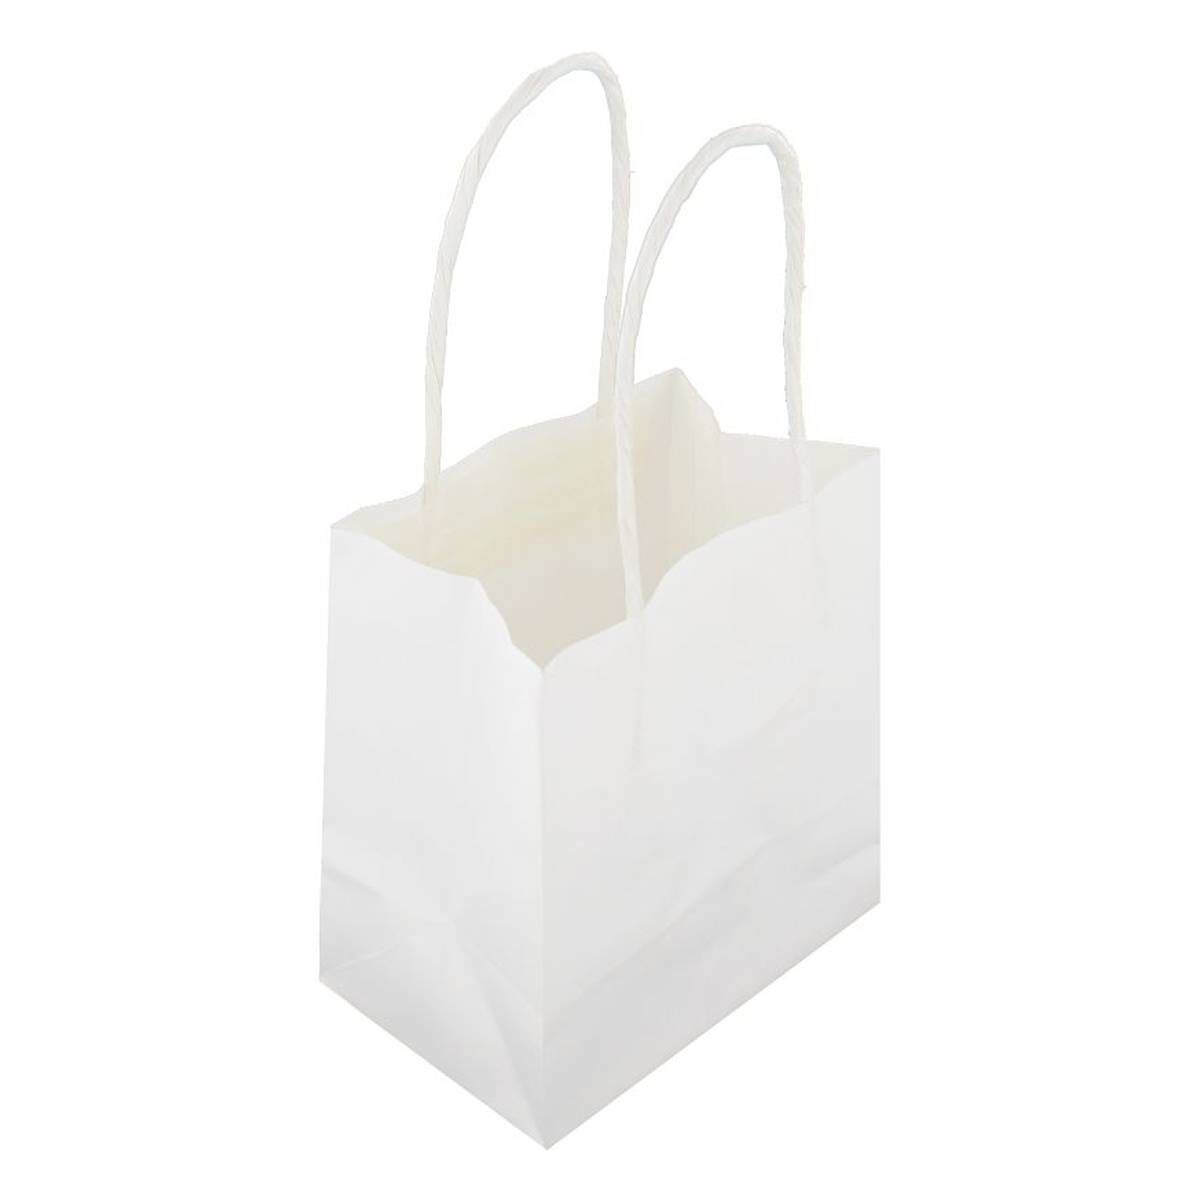 Fabric Gift Bag- Paint Splatter Bag | Bag-all